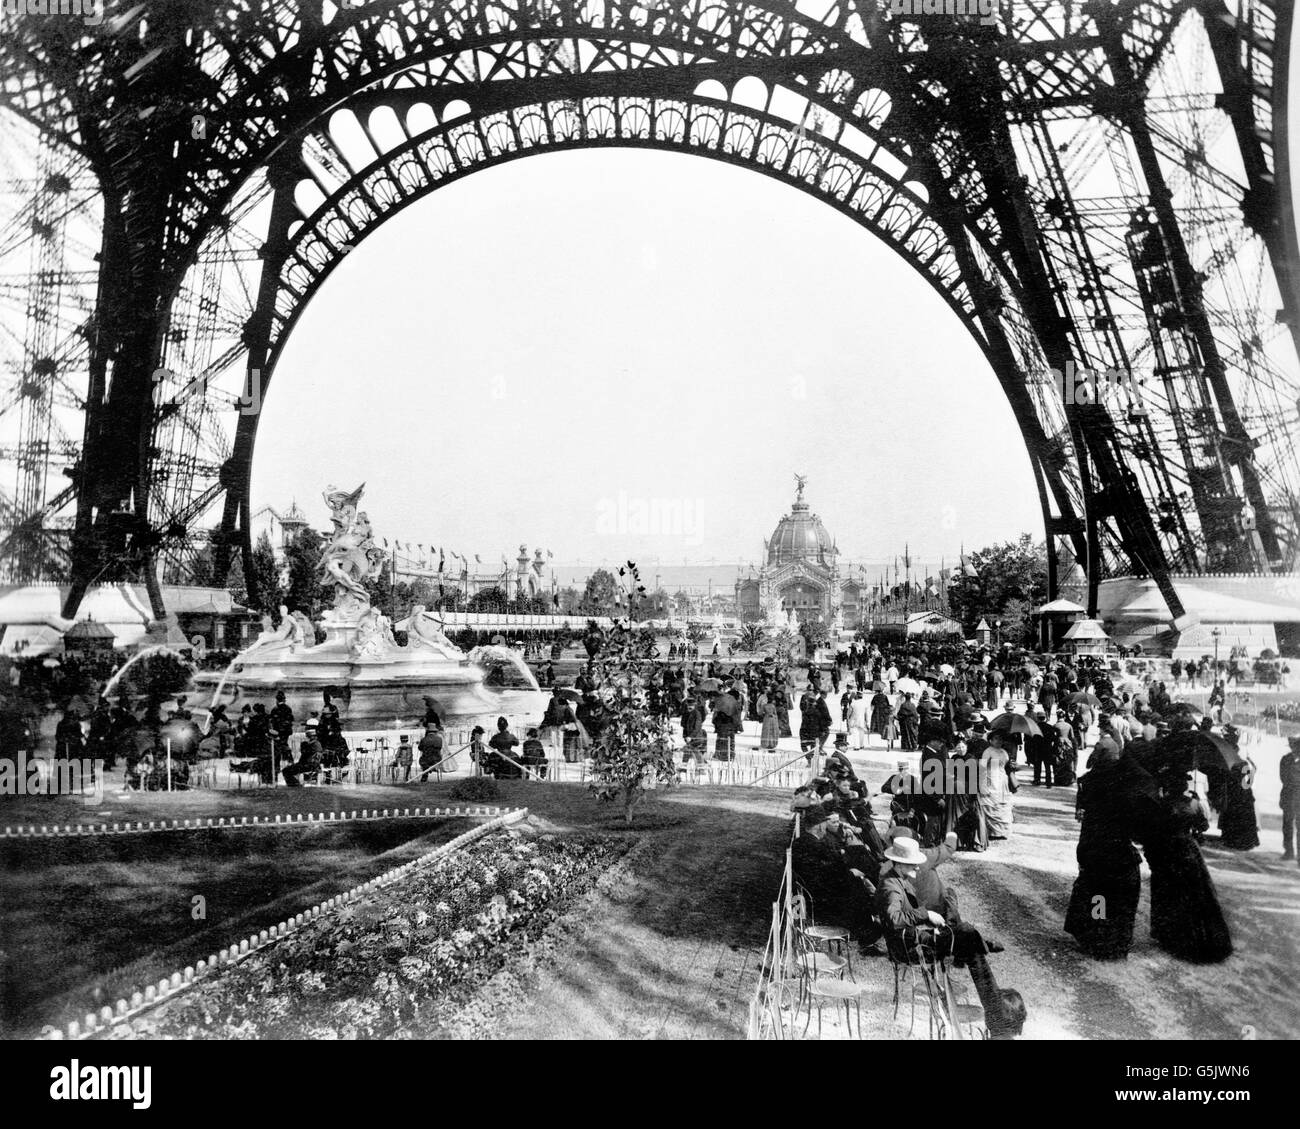 Exposition de Paris 1889. Tour Eiffel. La foule sur le Champ de Mars lors de l'Exposition Universelle de 1889, Paris, France. Banque D'Images